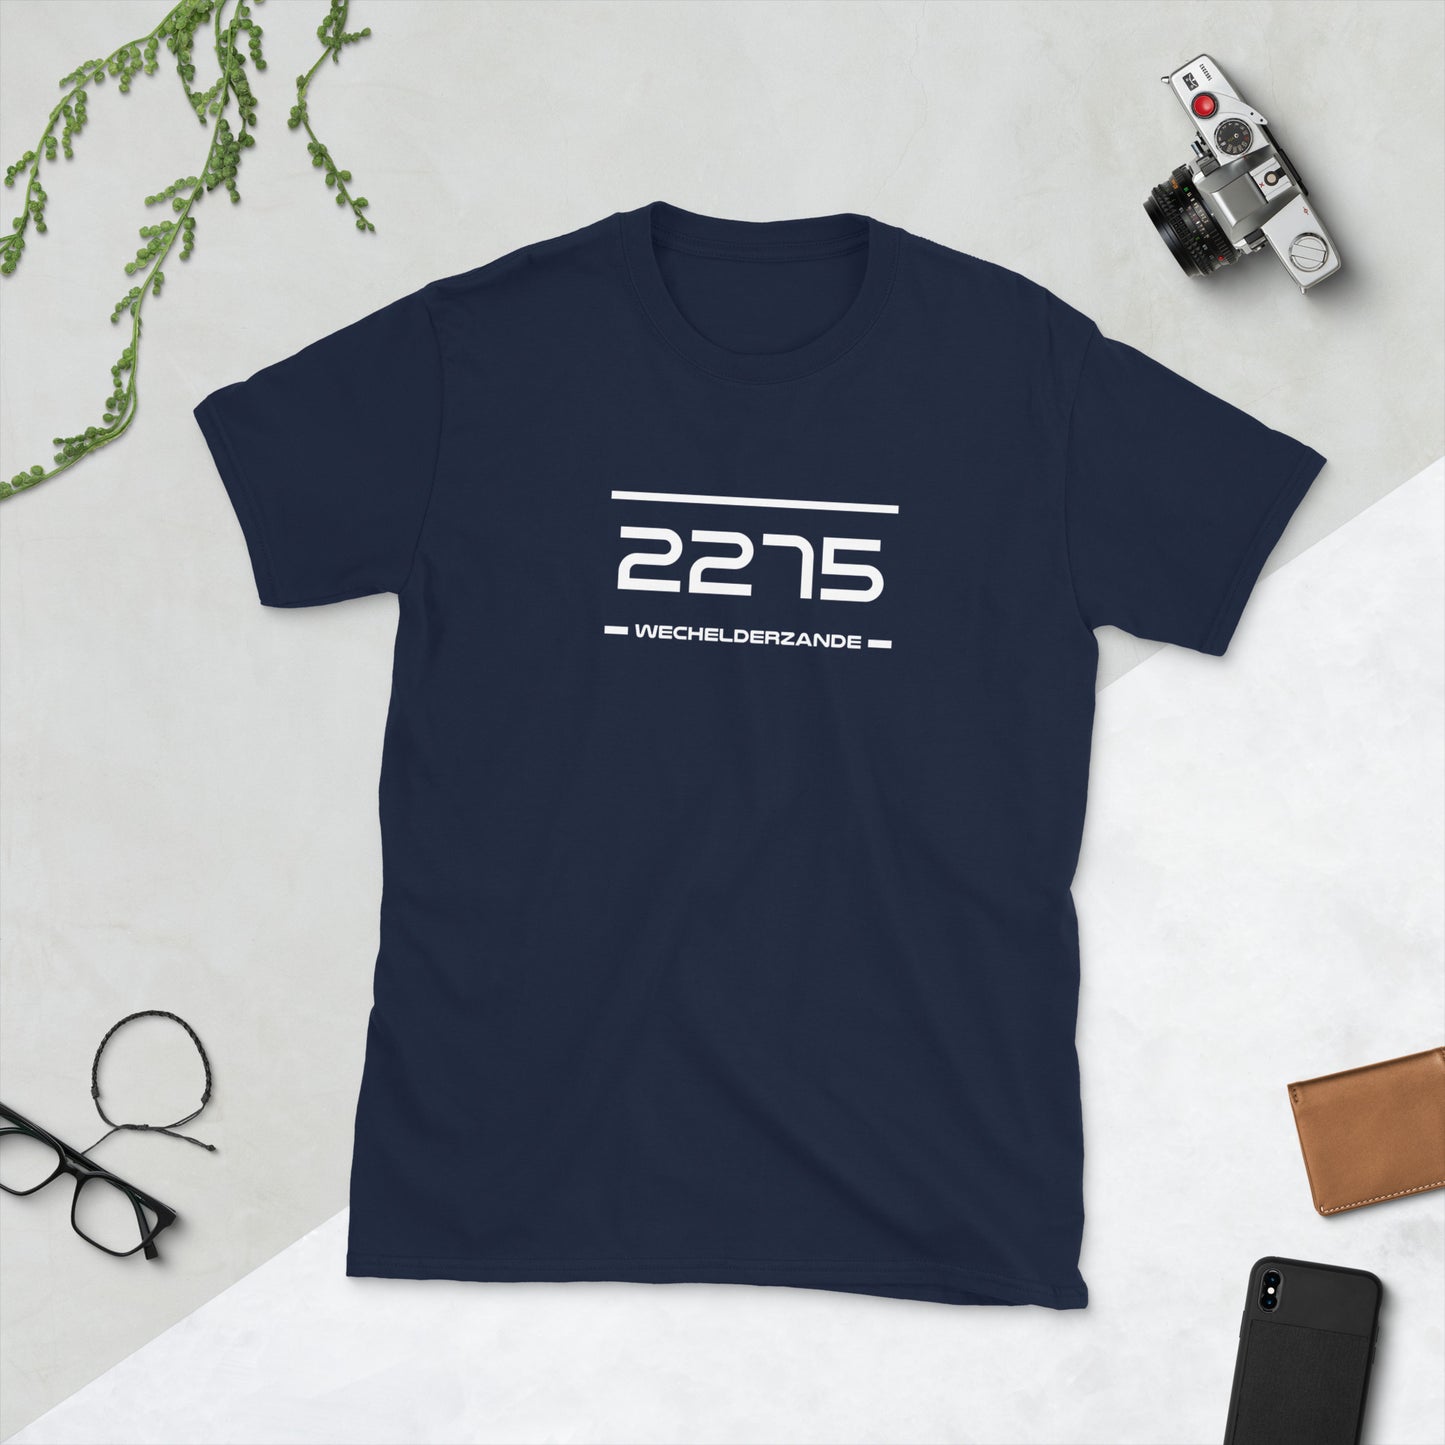 Tshirt - 2275 - Wechelderzande